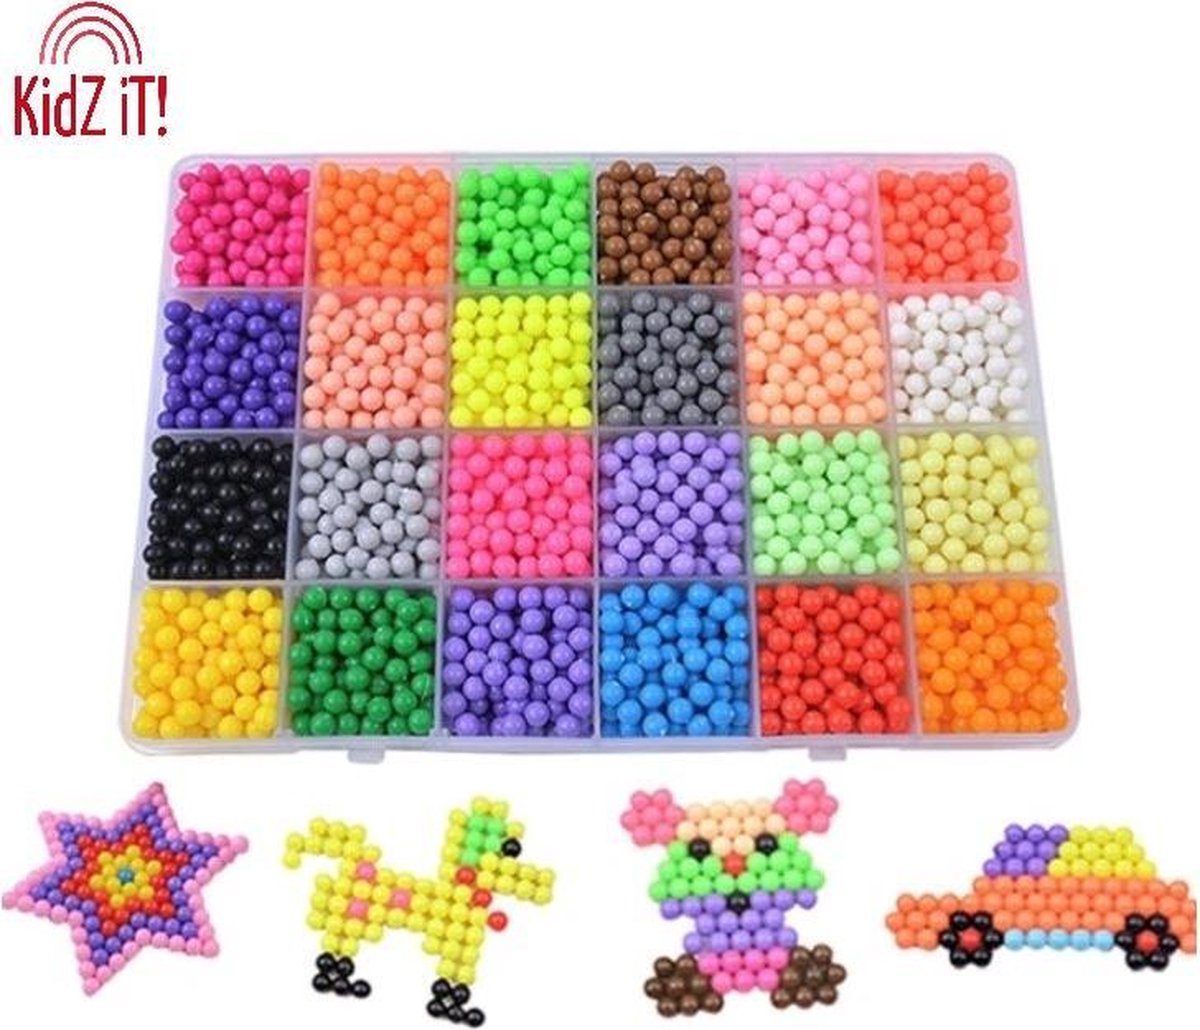 Afbeelding van product Aqua Parel Beads Mega pakket !!!SALE!!! 3400 stuks | Water Beads Kidz iT! | Beads Aqua Parels Met Box | Navulling Water Kralen | Strijkkralen Met Water